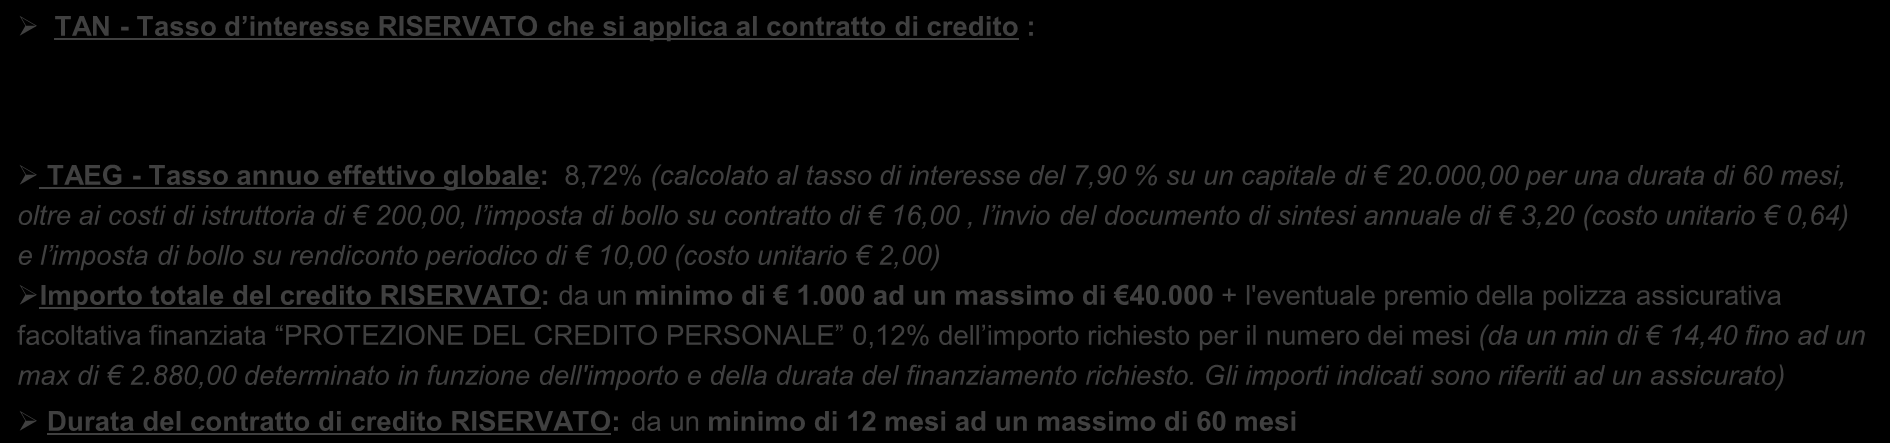 OFFERTA ECONOMICA SU : Prestito Personale CreditExpress Offerta riservata ai Pensionati del Gruppo UniCredit in Italia TAN - Tasso d interesse RISERVATO che si applica al contratto di credito : 7,90%